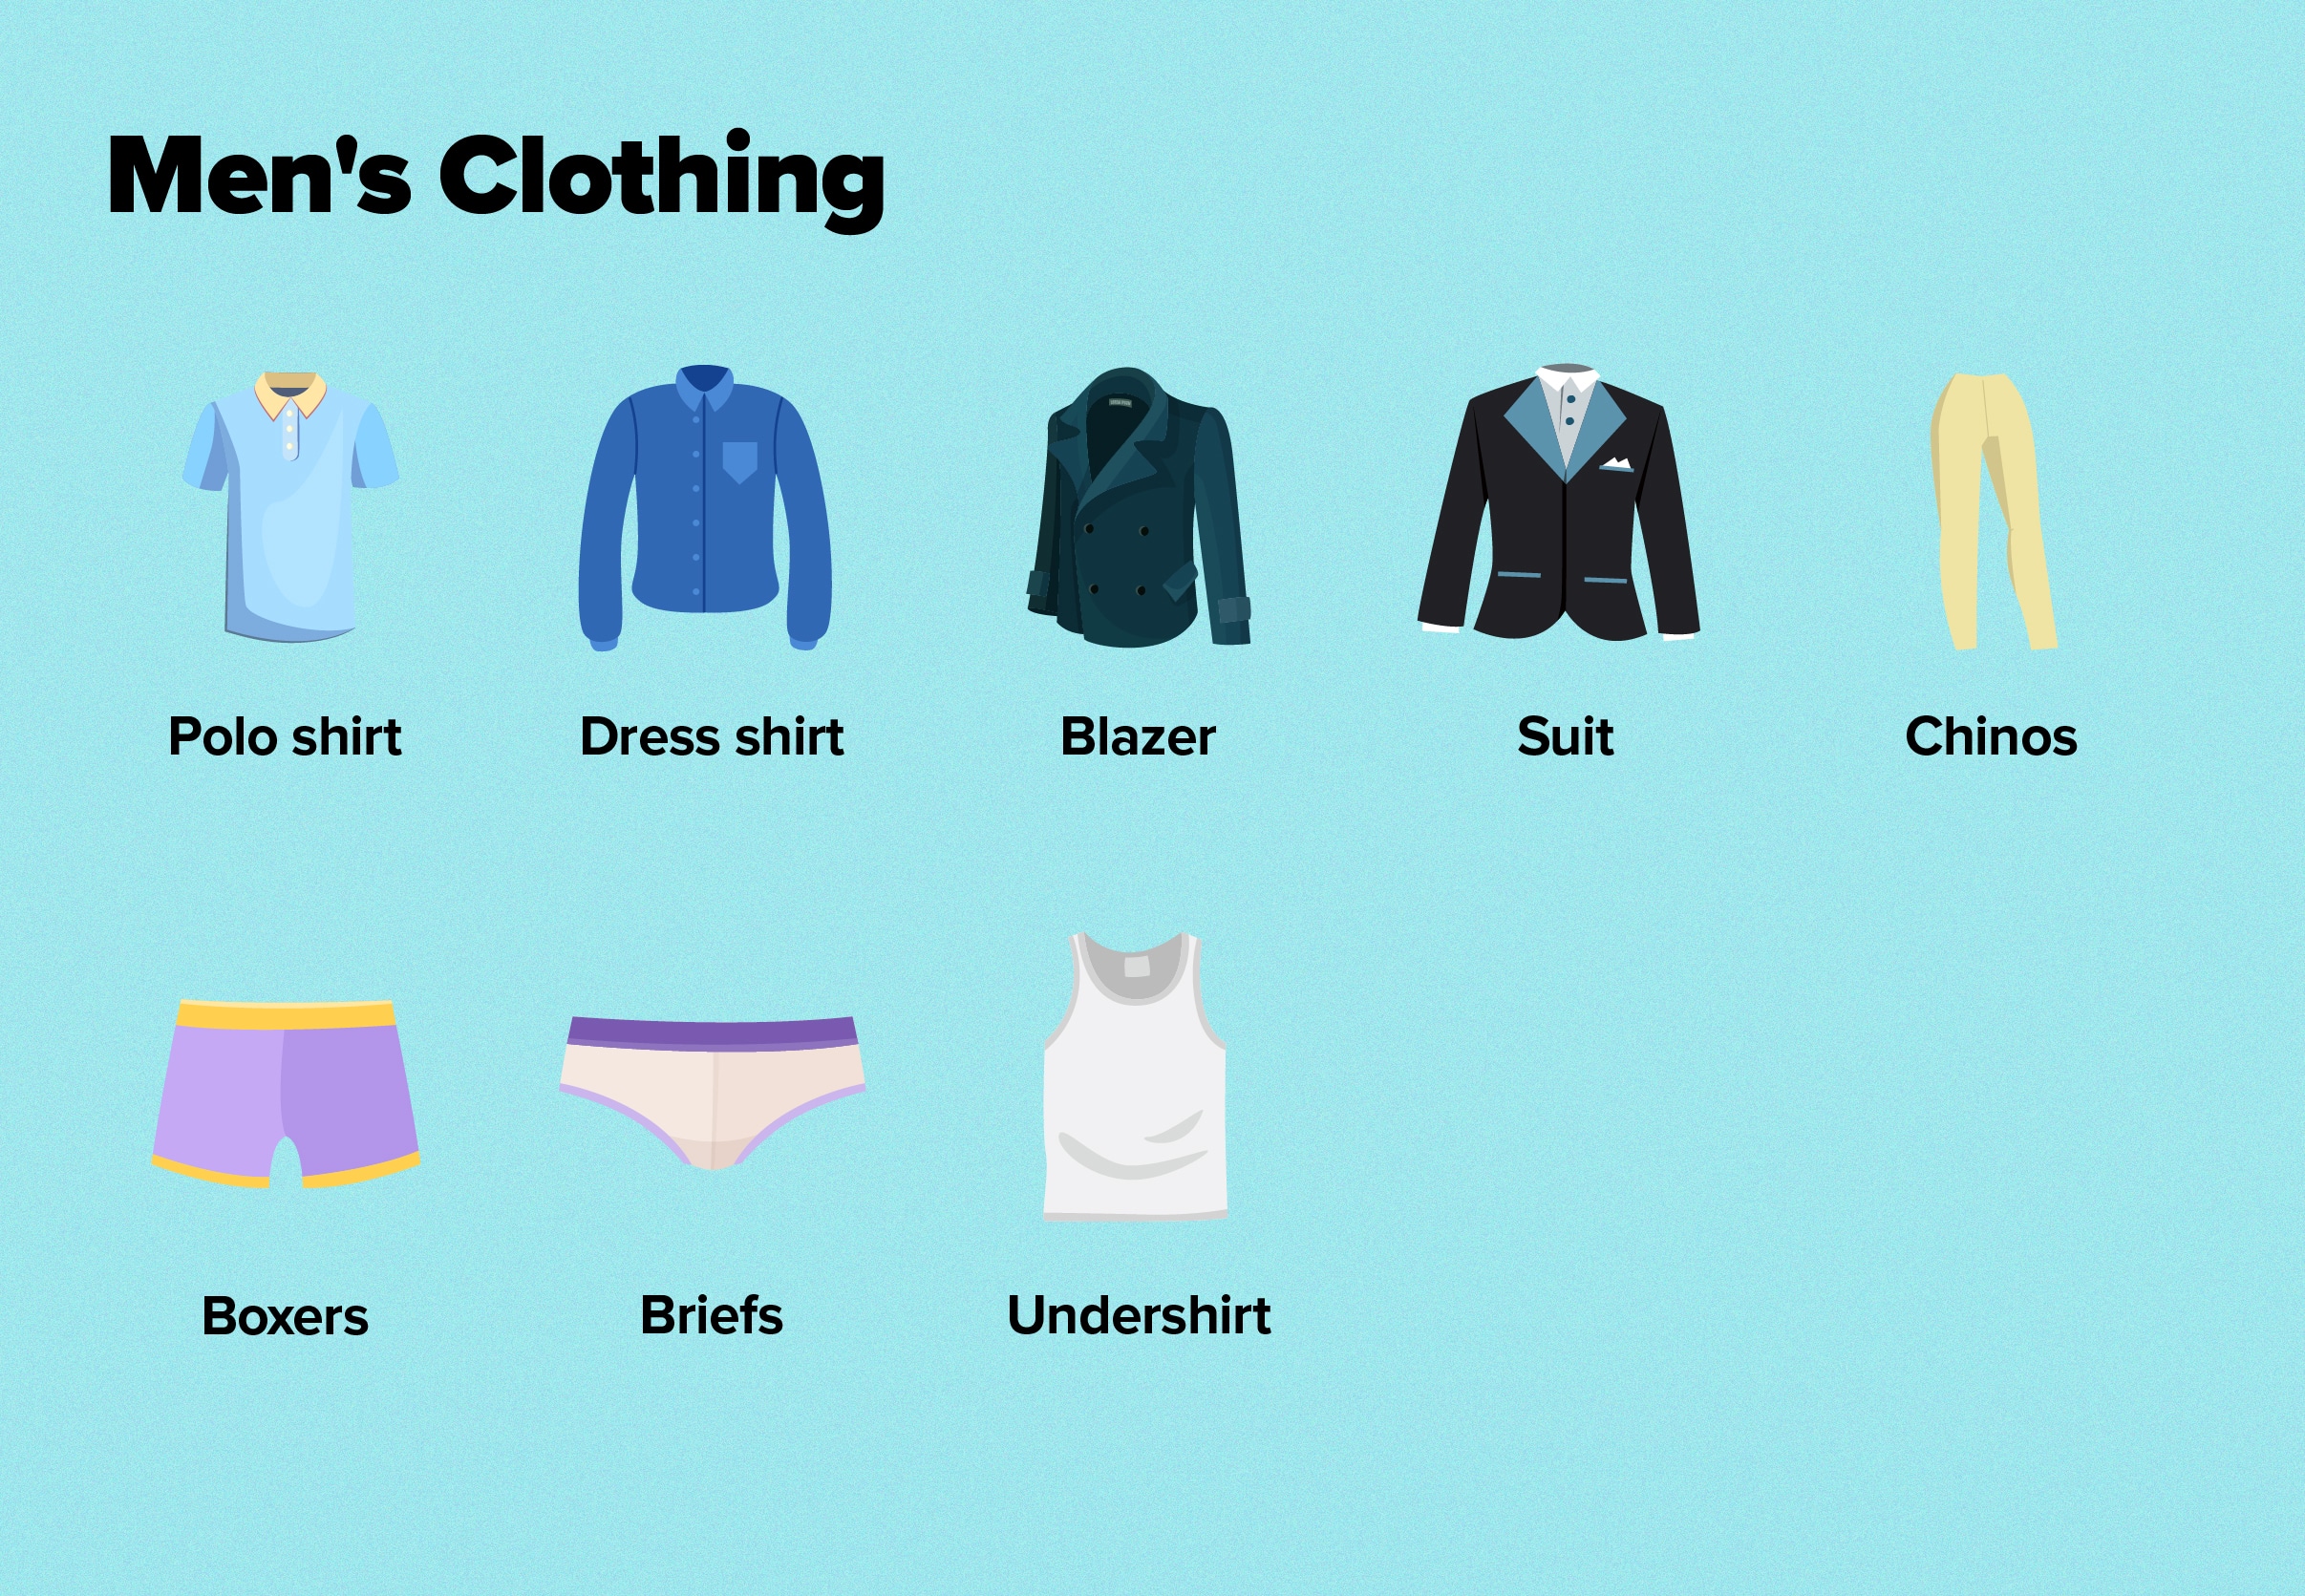 clothes vocabulary presentation